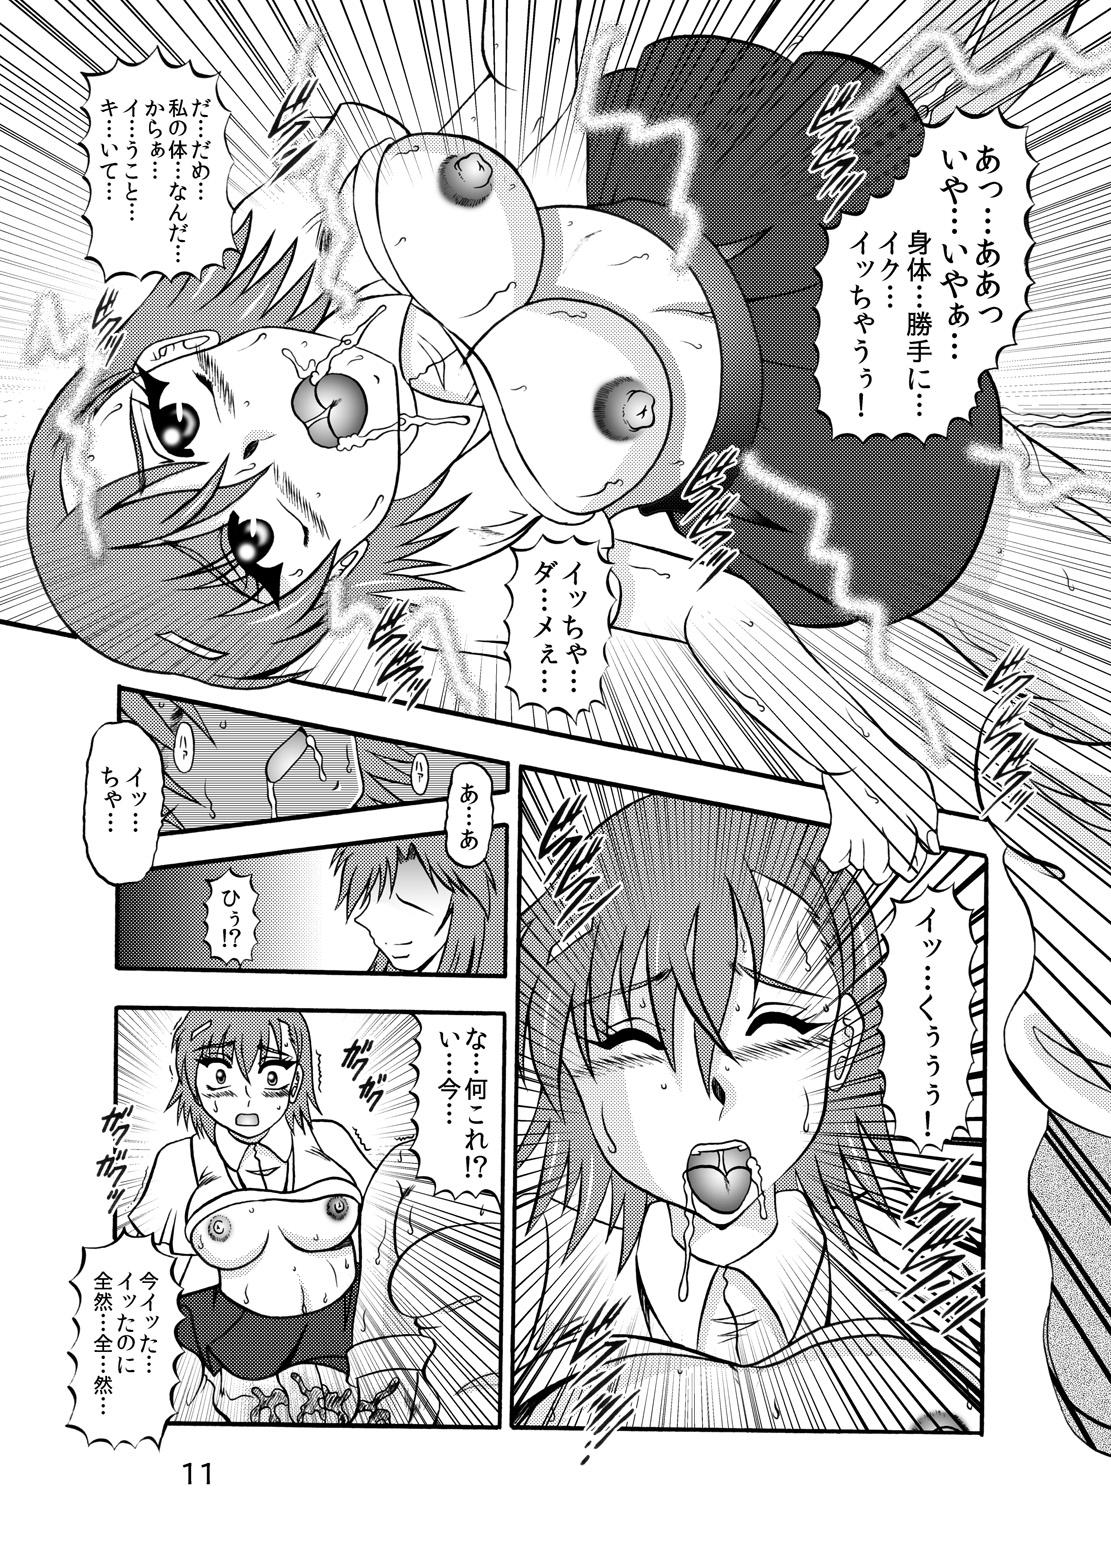 Cheerleader Inyoku Kaizou: Misaka Mikoto - Toaru kagaku no railgun Cei - Page 9